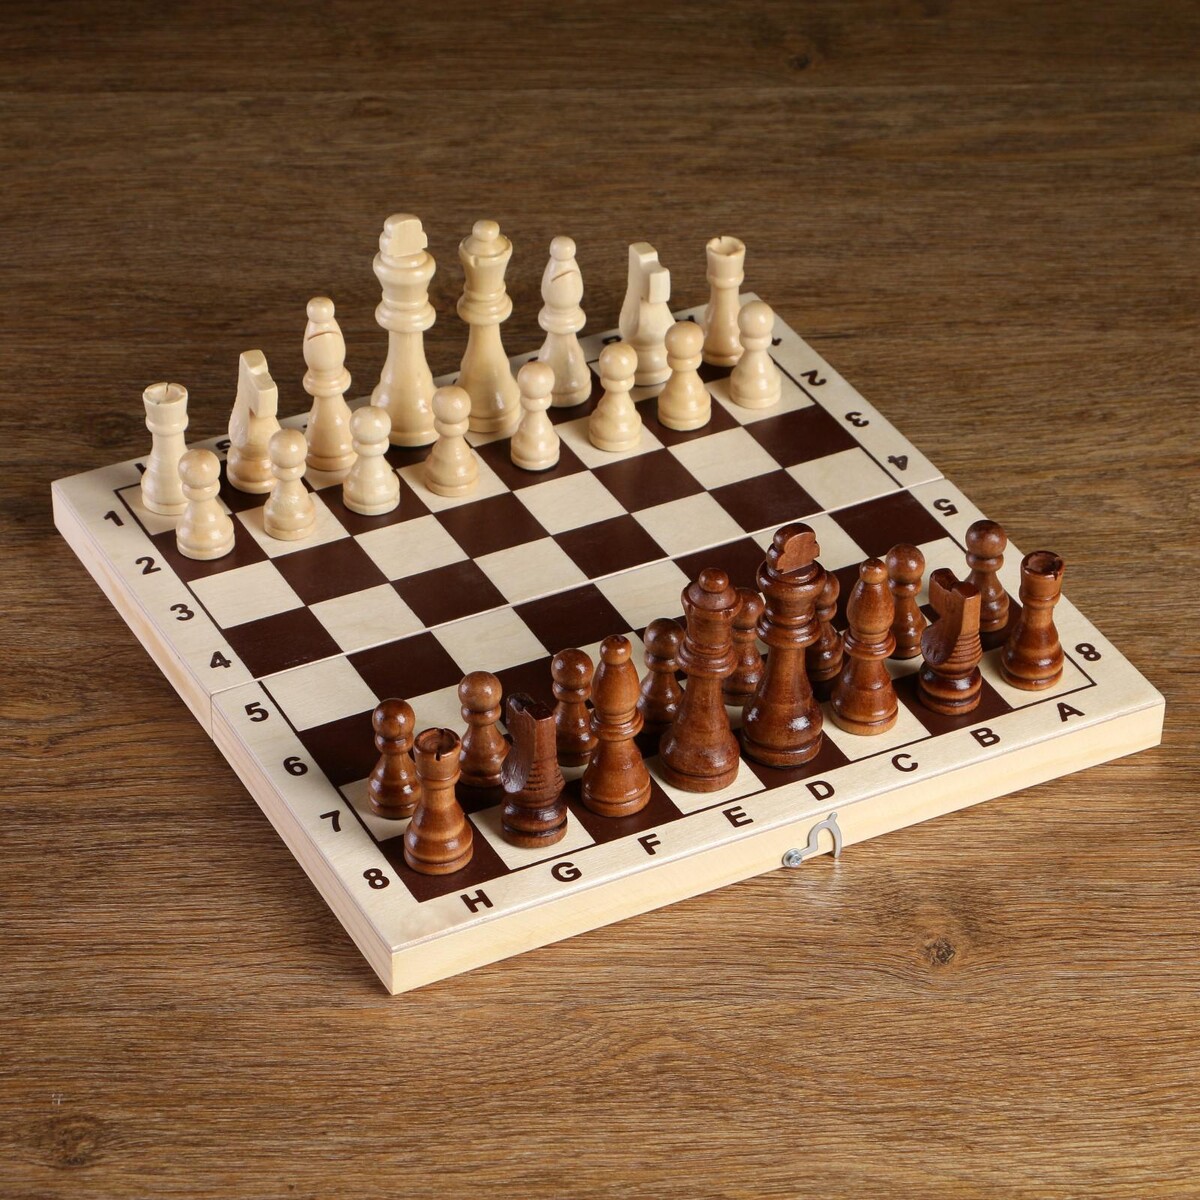 Шахматные фигуры, король h-8 см, пешка h-4 см шахматные фигуры гроссмейстерские